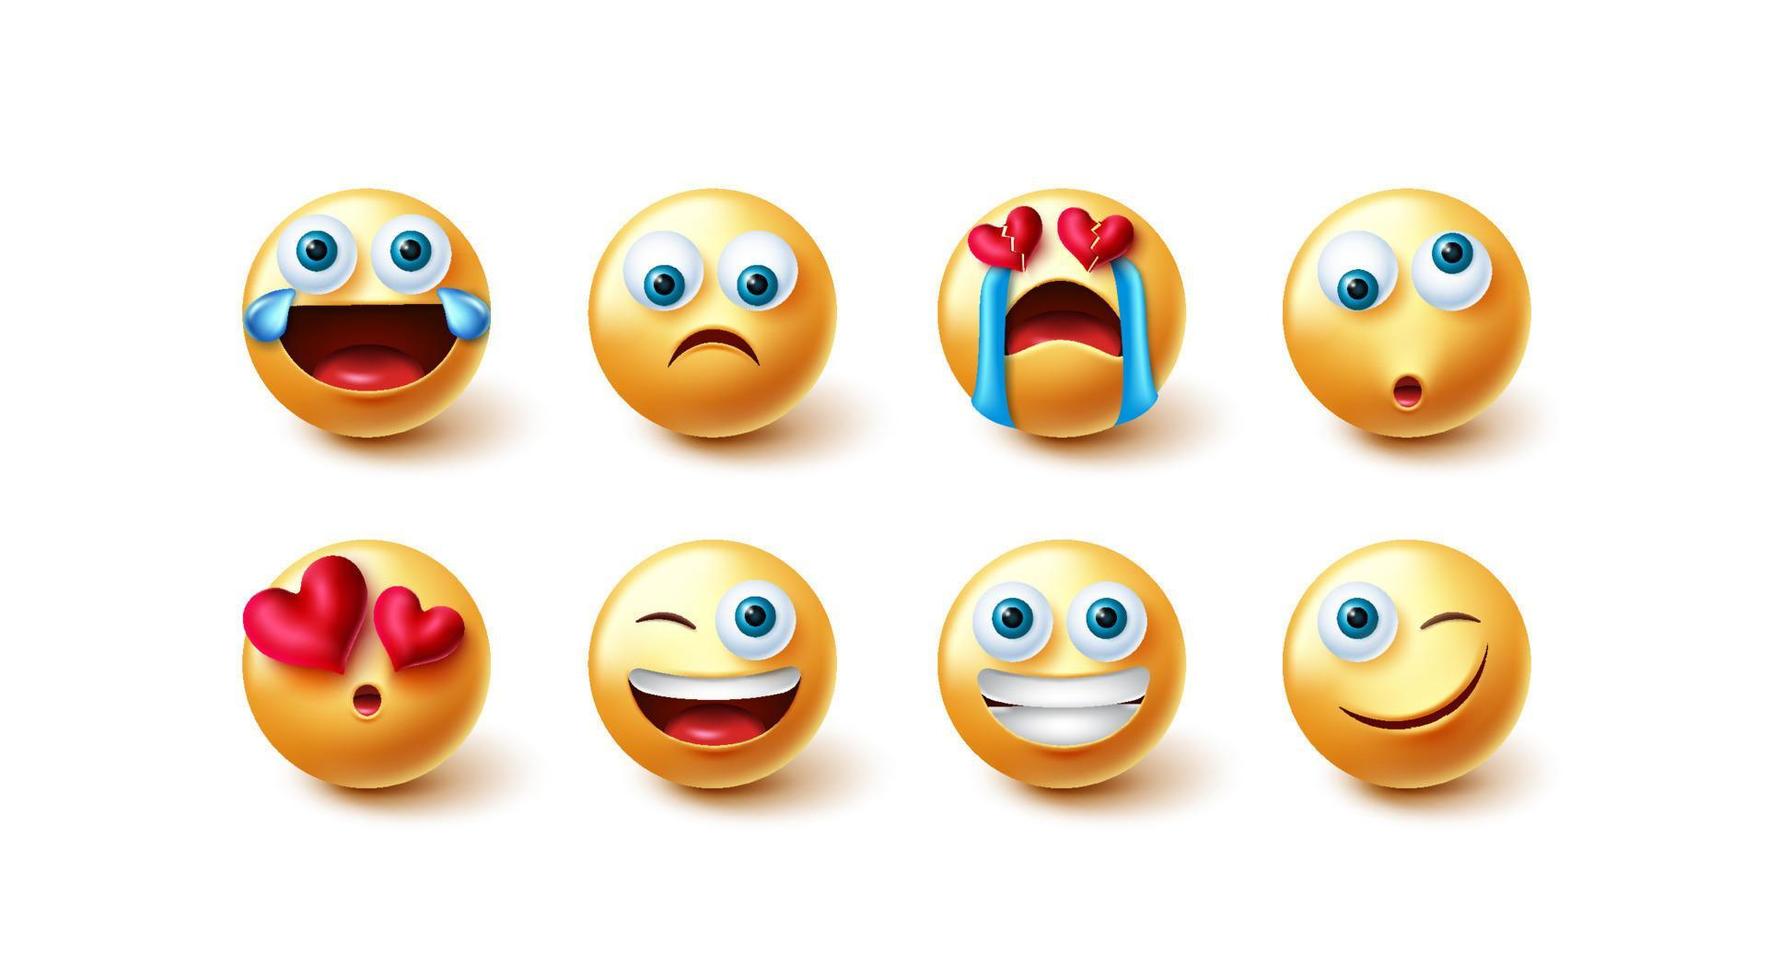 Emoji-Zeichen-Vektorsatz. Emoticons grafisches 3D-Design in lustigen, süßen und traurigen Emotionen mit gebrochenem Herzen für Emojis-Ausdruckssymbol-Charaktersammlung. Vektor-Illustration. vektor